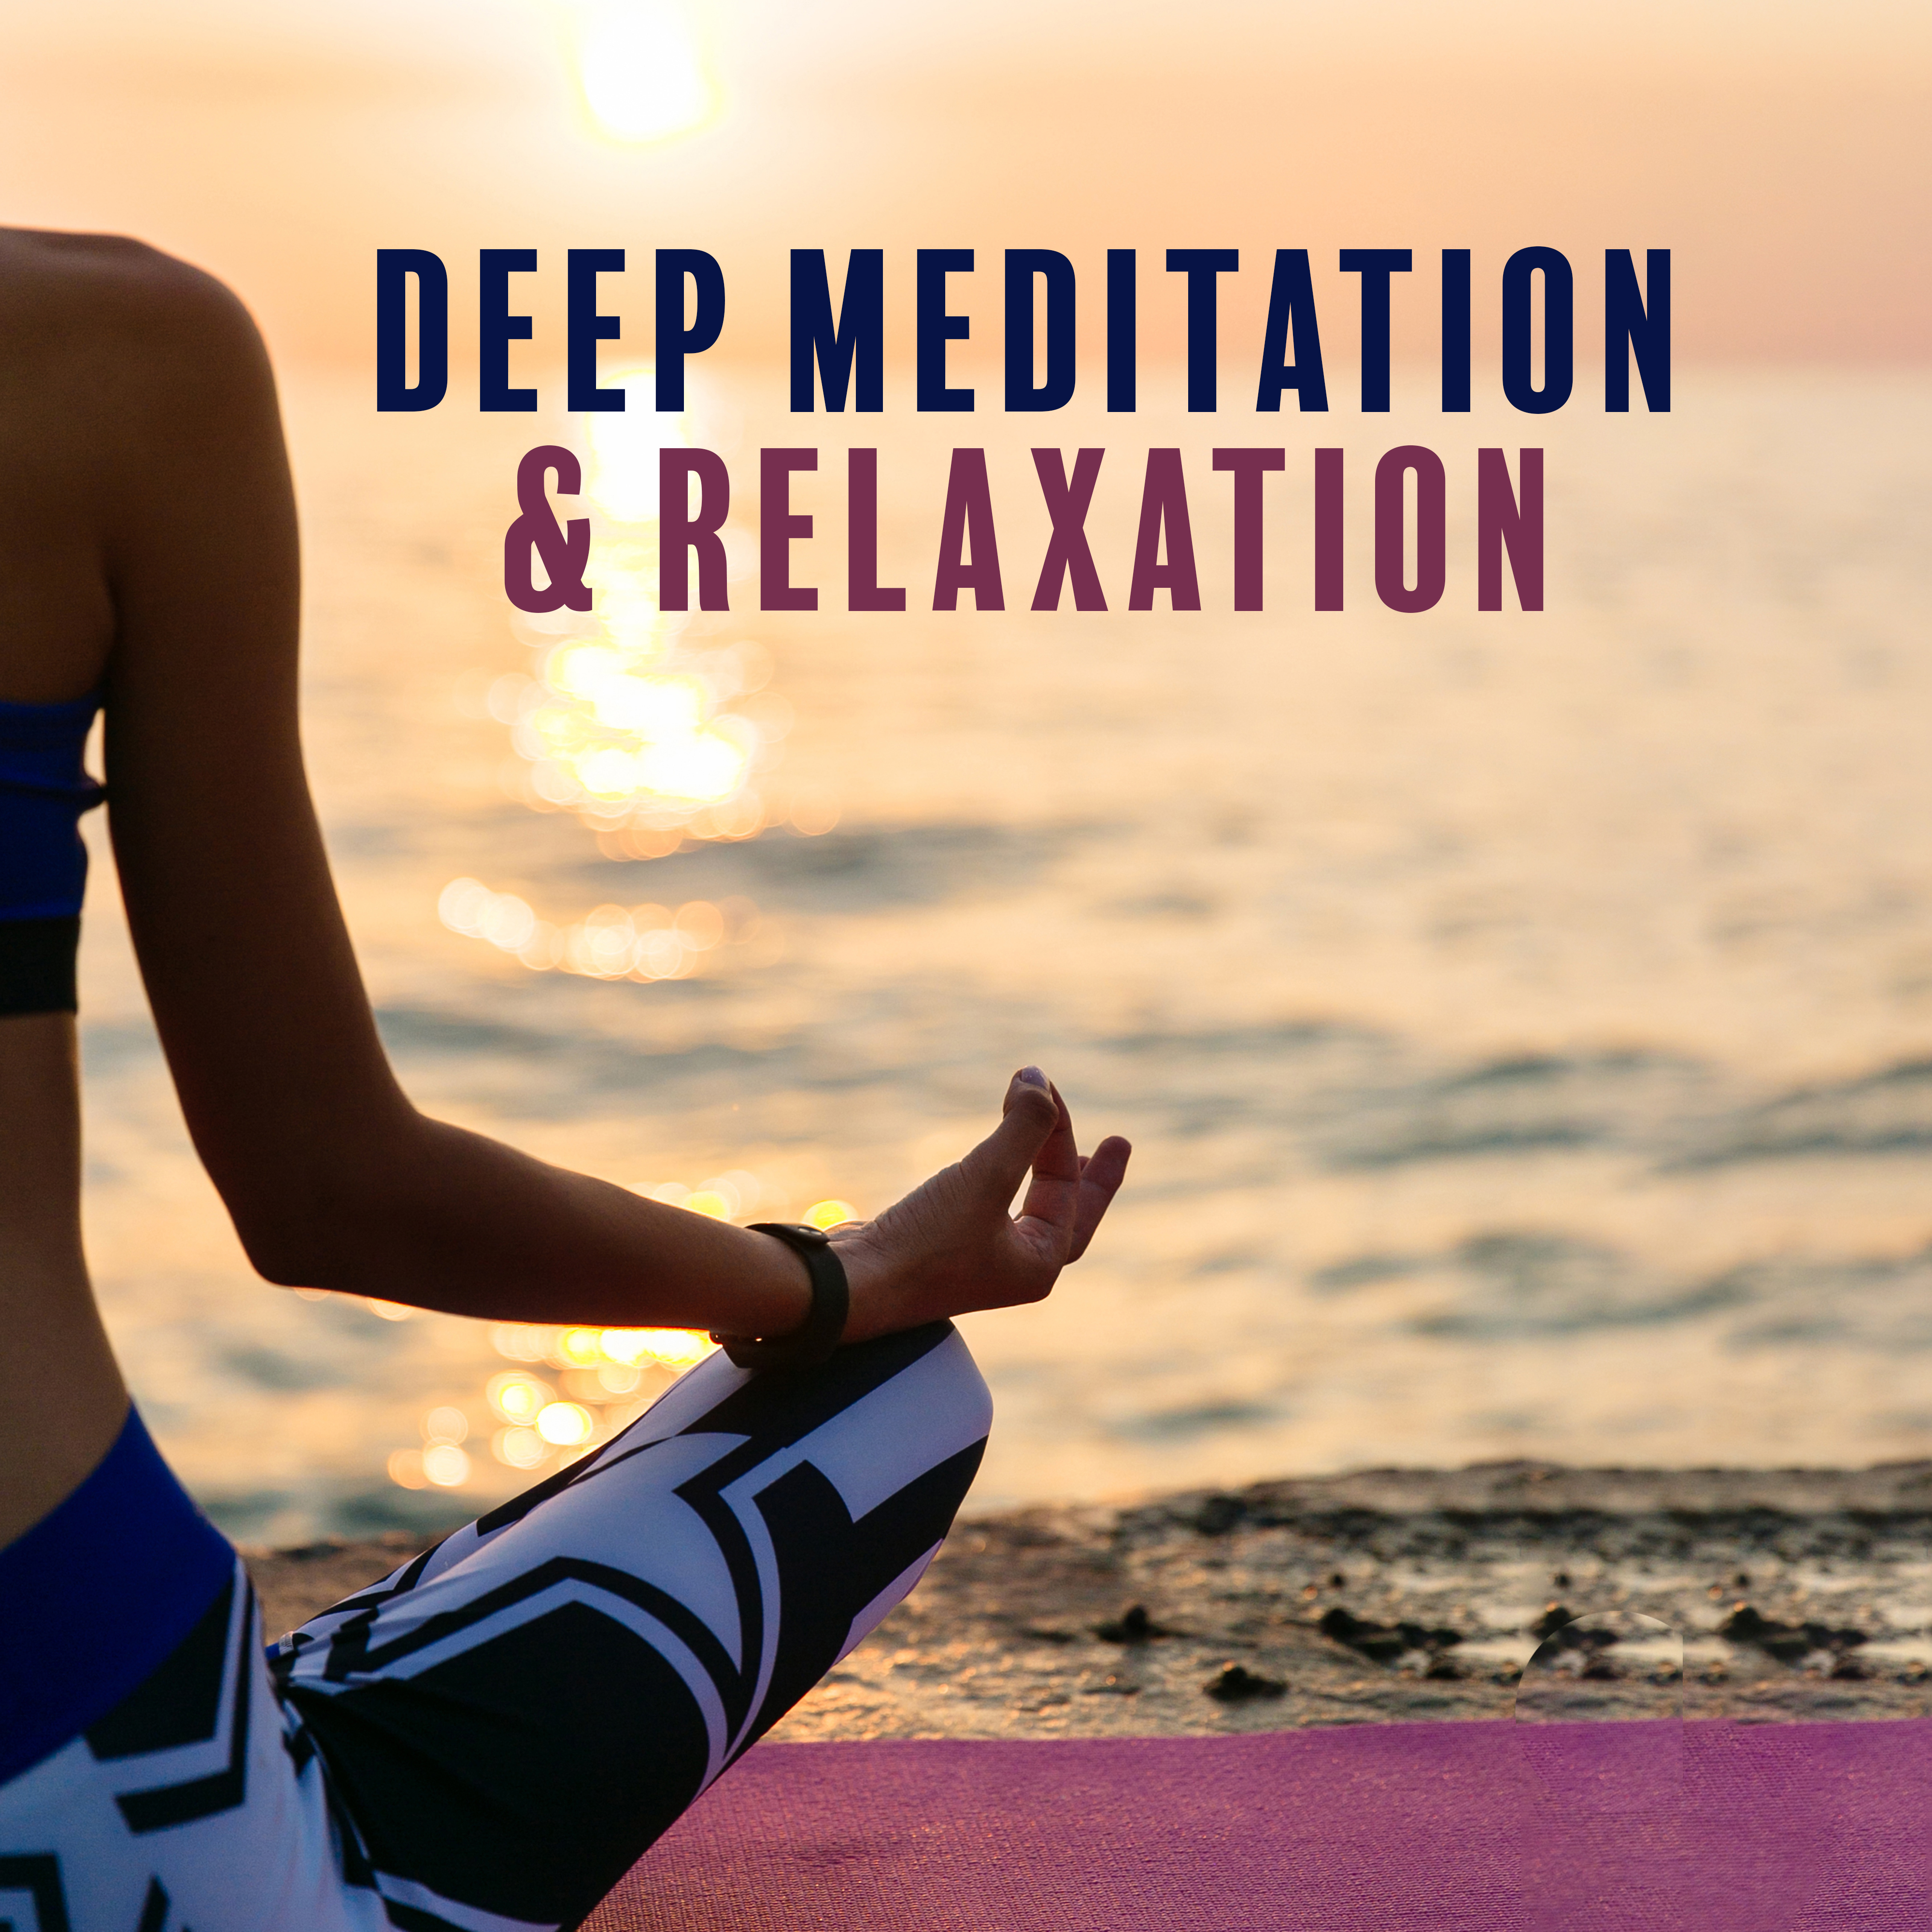 Mindfulness Meditation Sounds